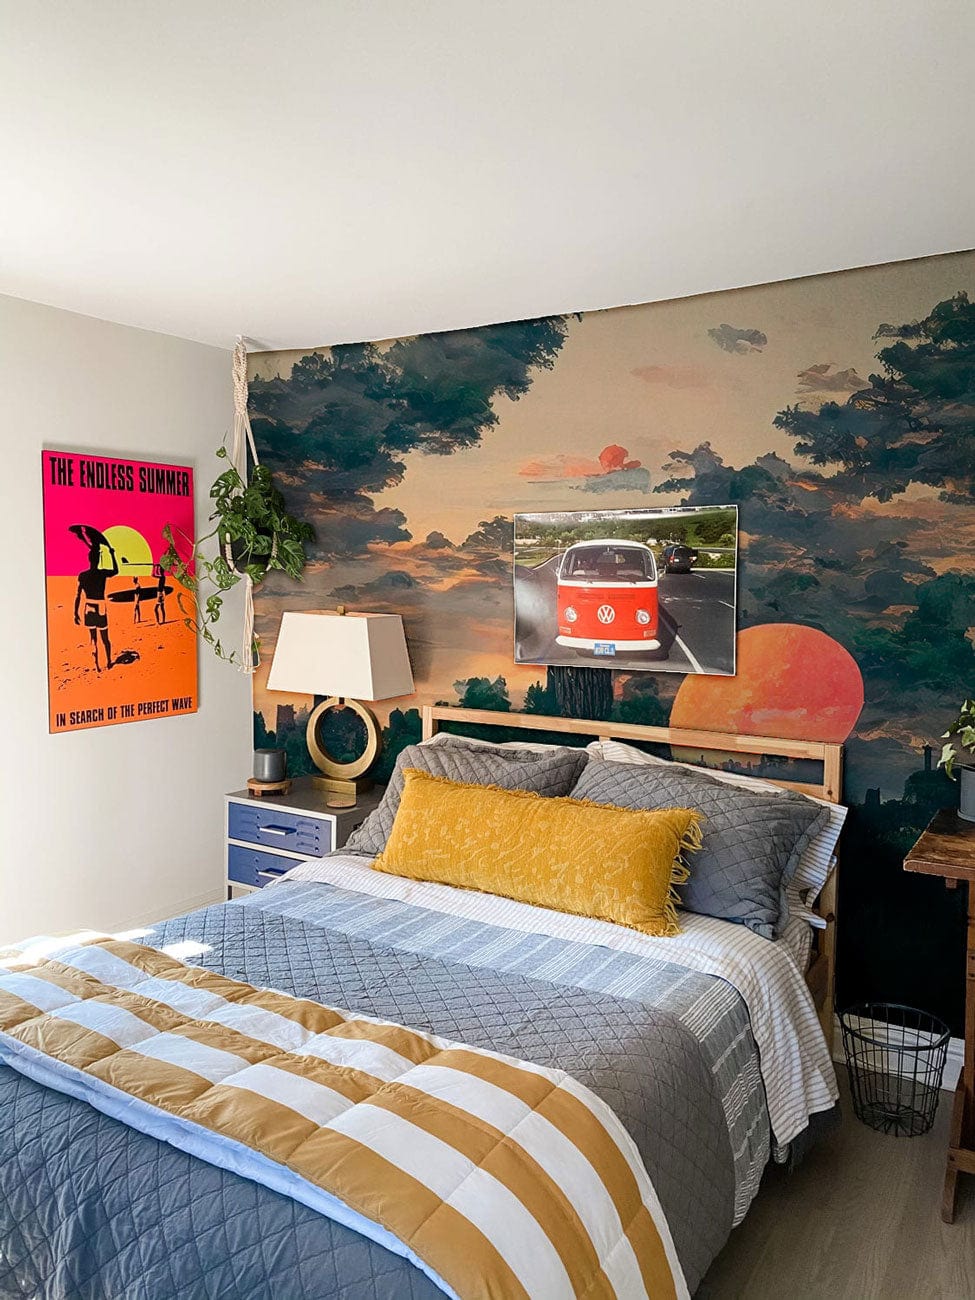 village sunset wallpaper mural bedroom decor idea